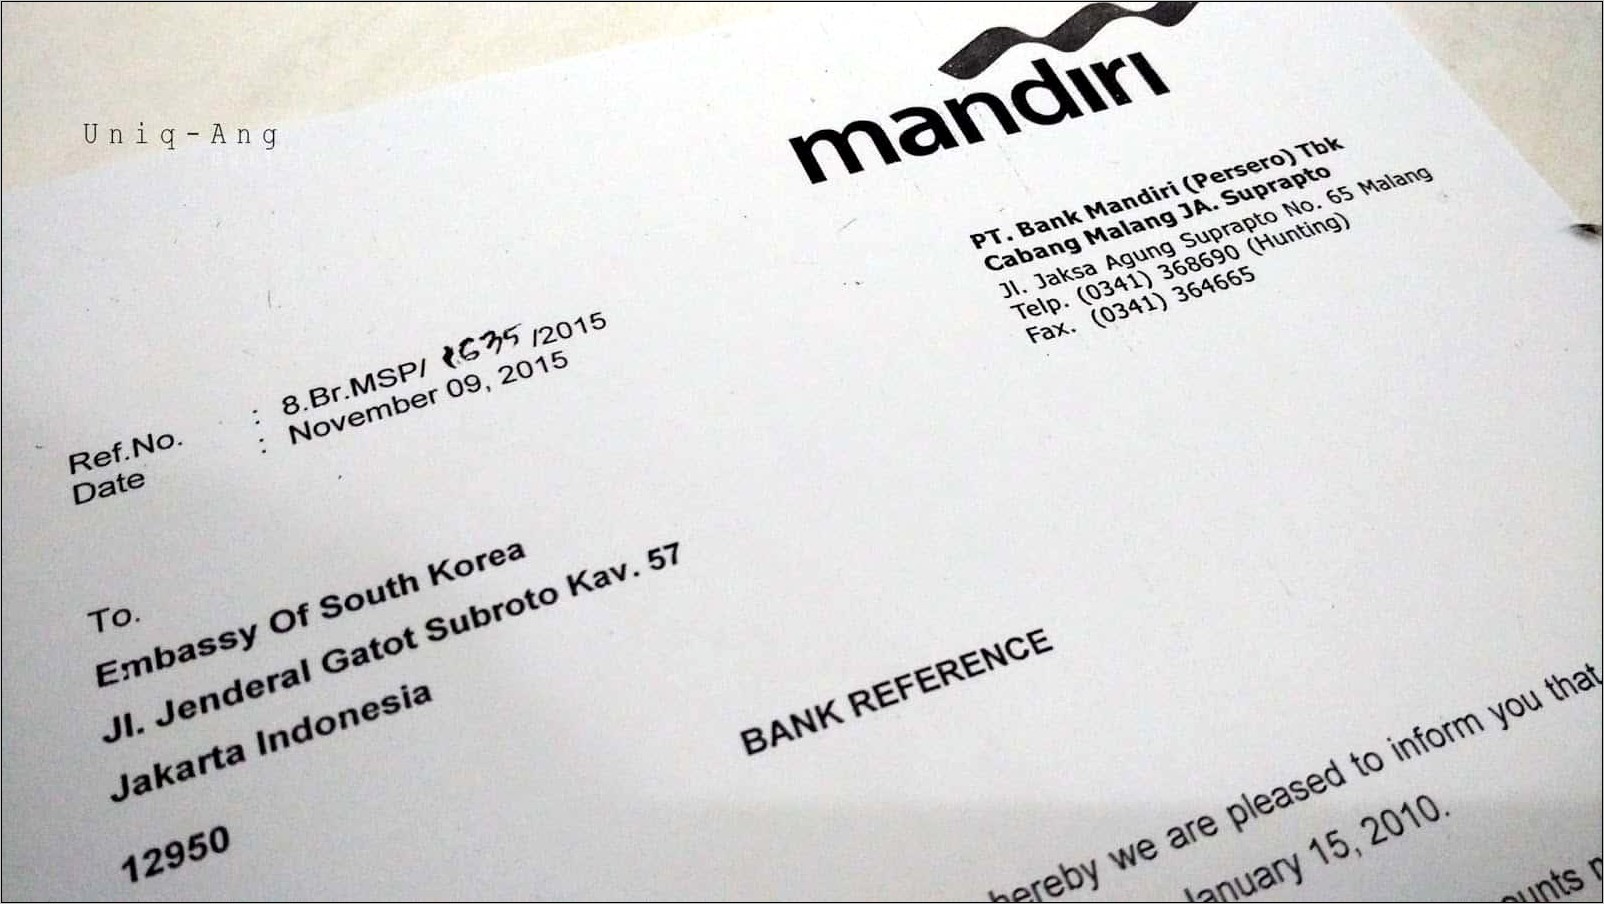 Contoh Surat Permohonan Referensi Bank Untuk Pembukaan Rekening